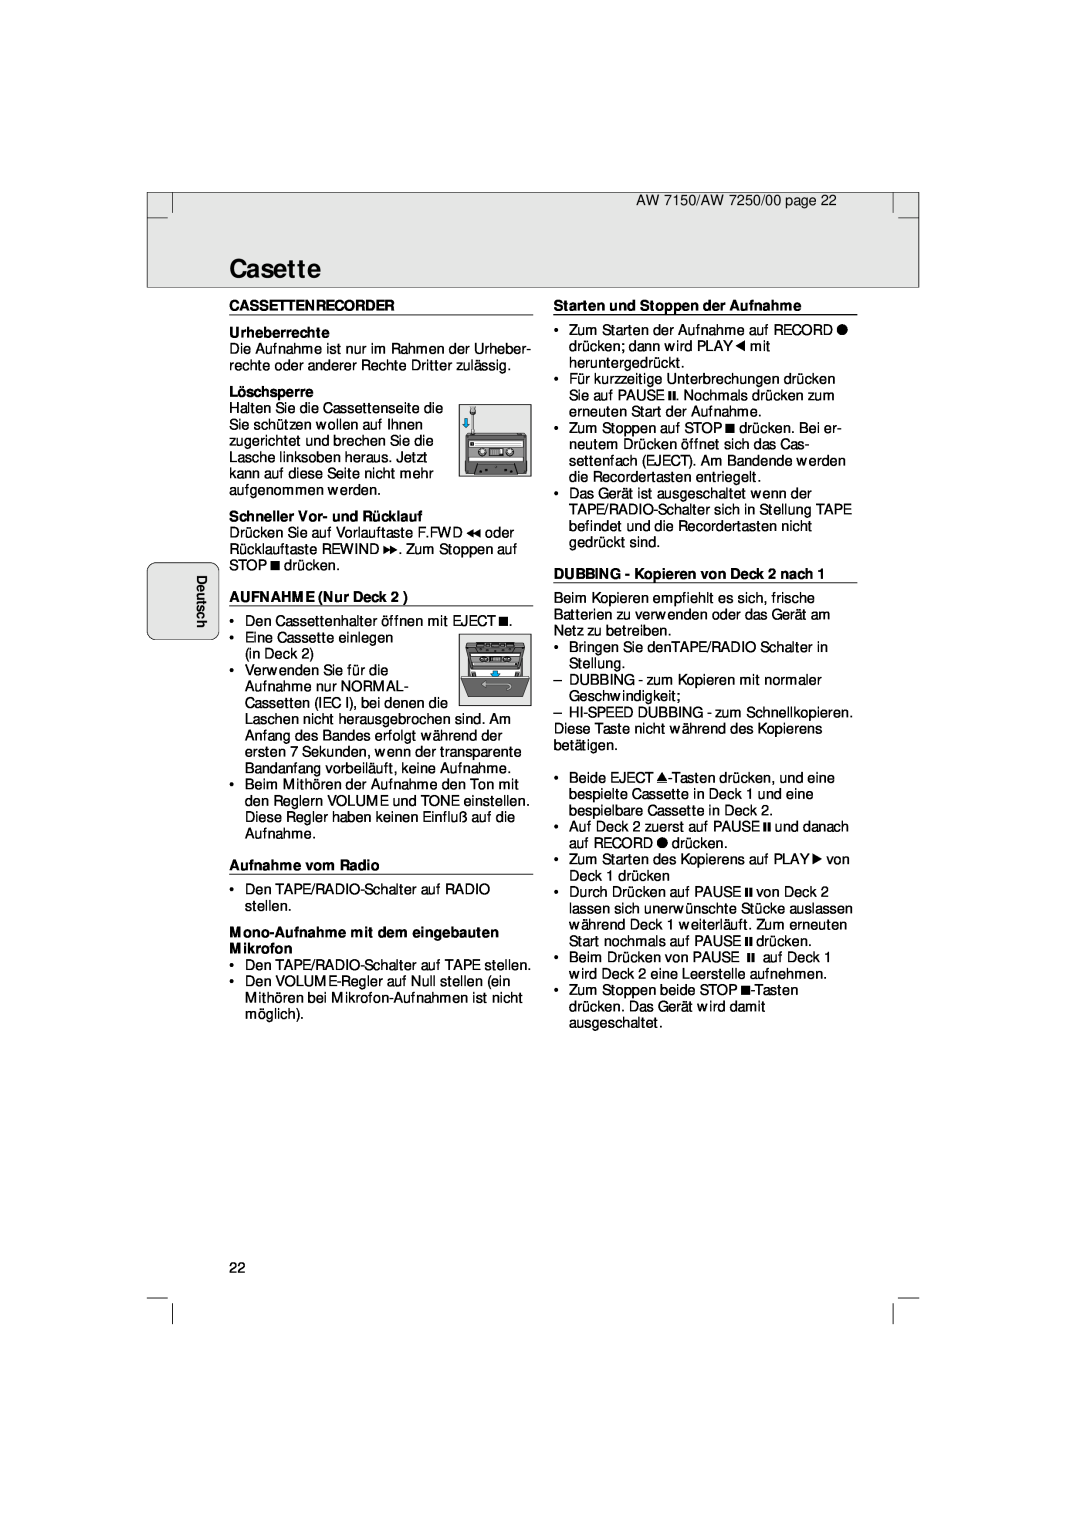 Philips AW 7150/04S manual Casette, Deutsch, CASSETTENRECORDER Urheberrechte, Starten und Stoppen der Aufnahme, Löschsperre 